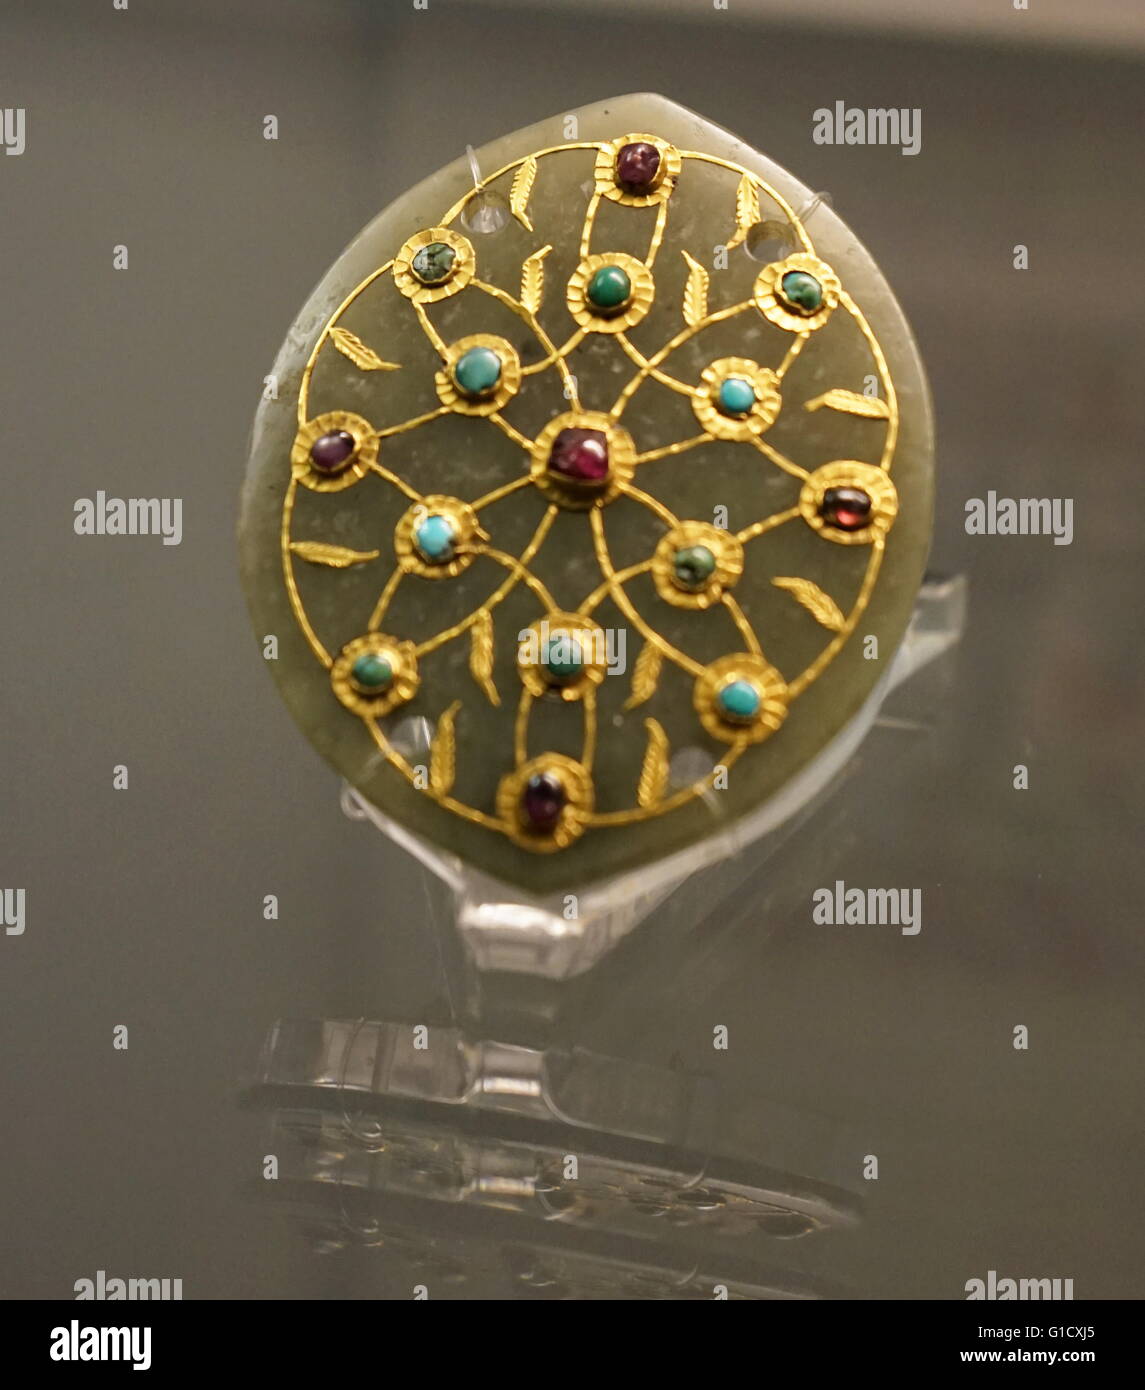 Plaque de Jade un carquois, incrustés de rubis et turquoises dans un gold. remplages À partir de la Turquie ottomane. En date du 16e siècle Banque D'Images